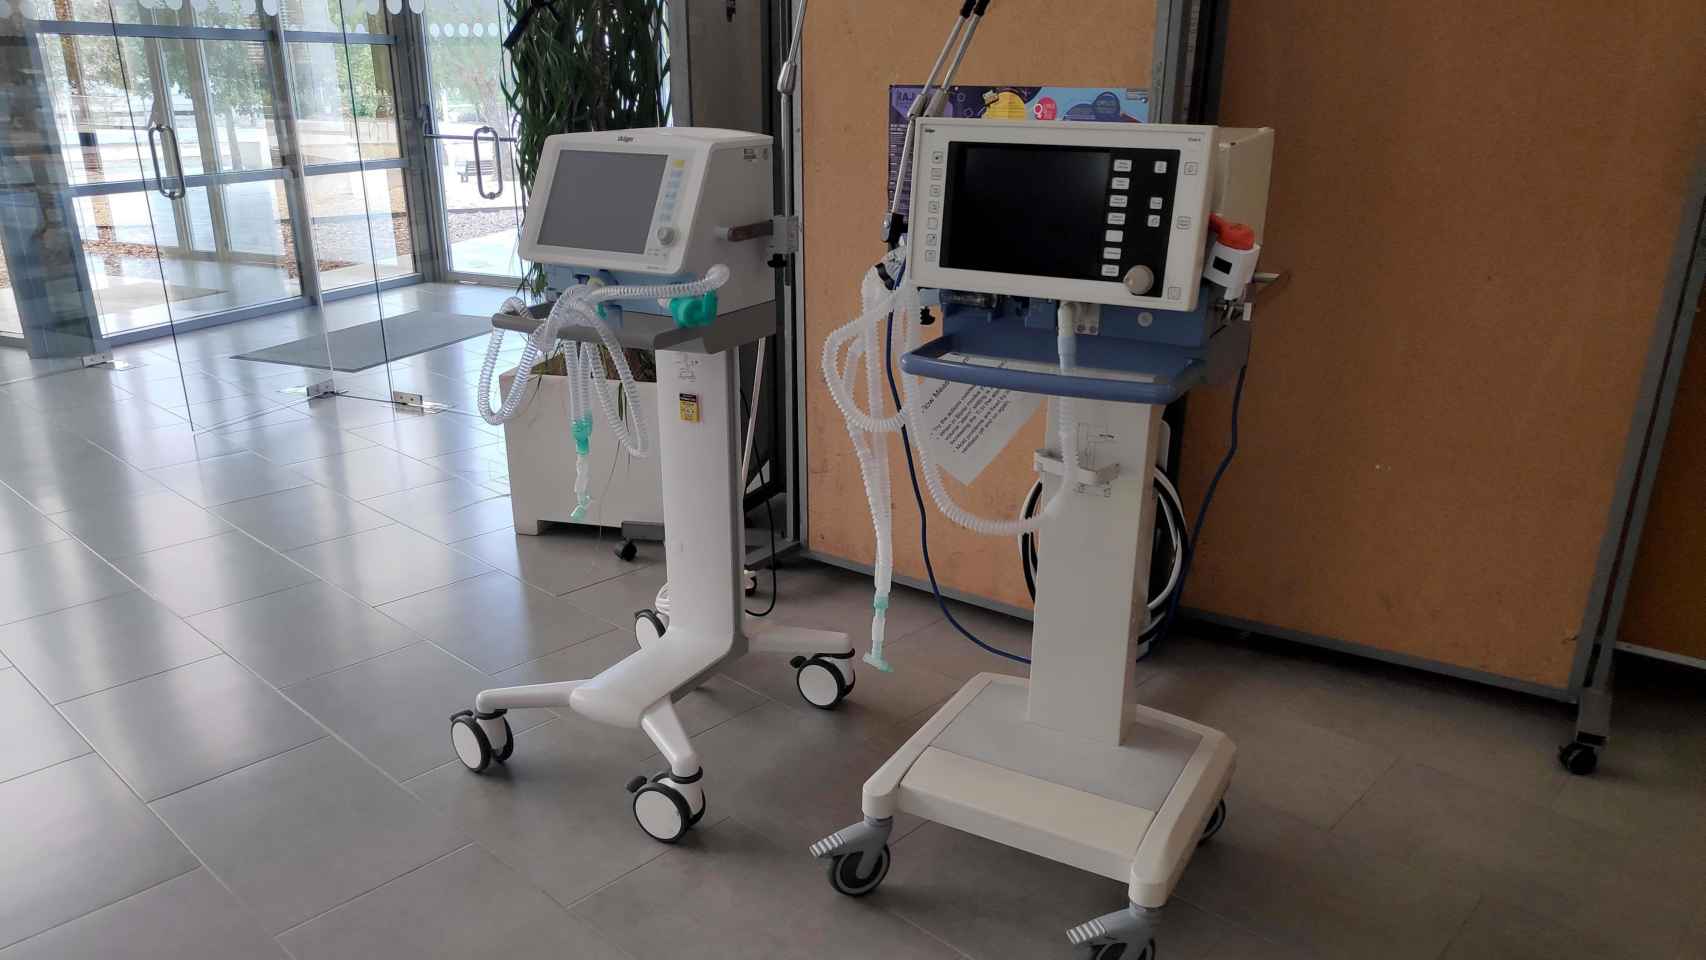 Respiradores, una de las carencias detectadas en los hospitales para atender los casos de Covid-19 / EP